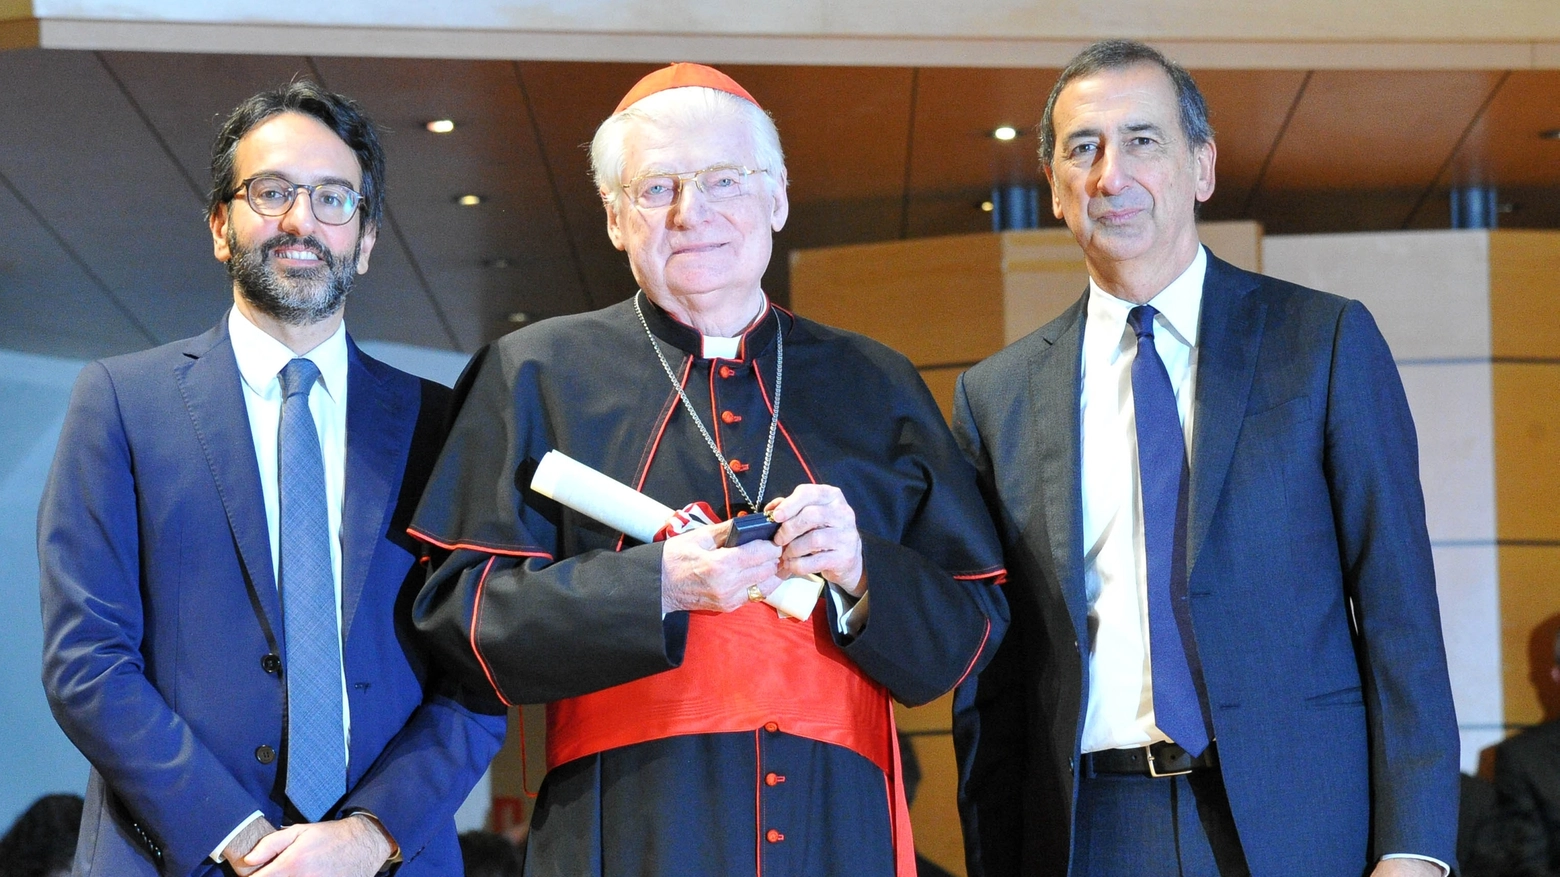 Ambrogino d'oro all'ex arcivescovo Angelo Scola